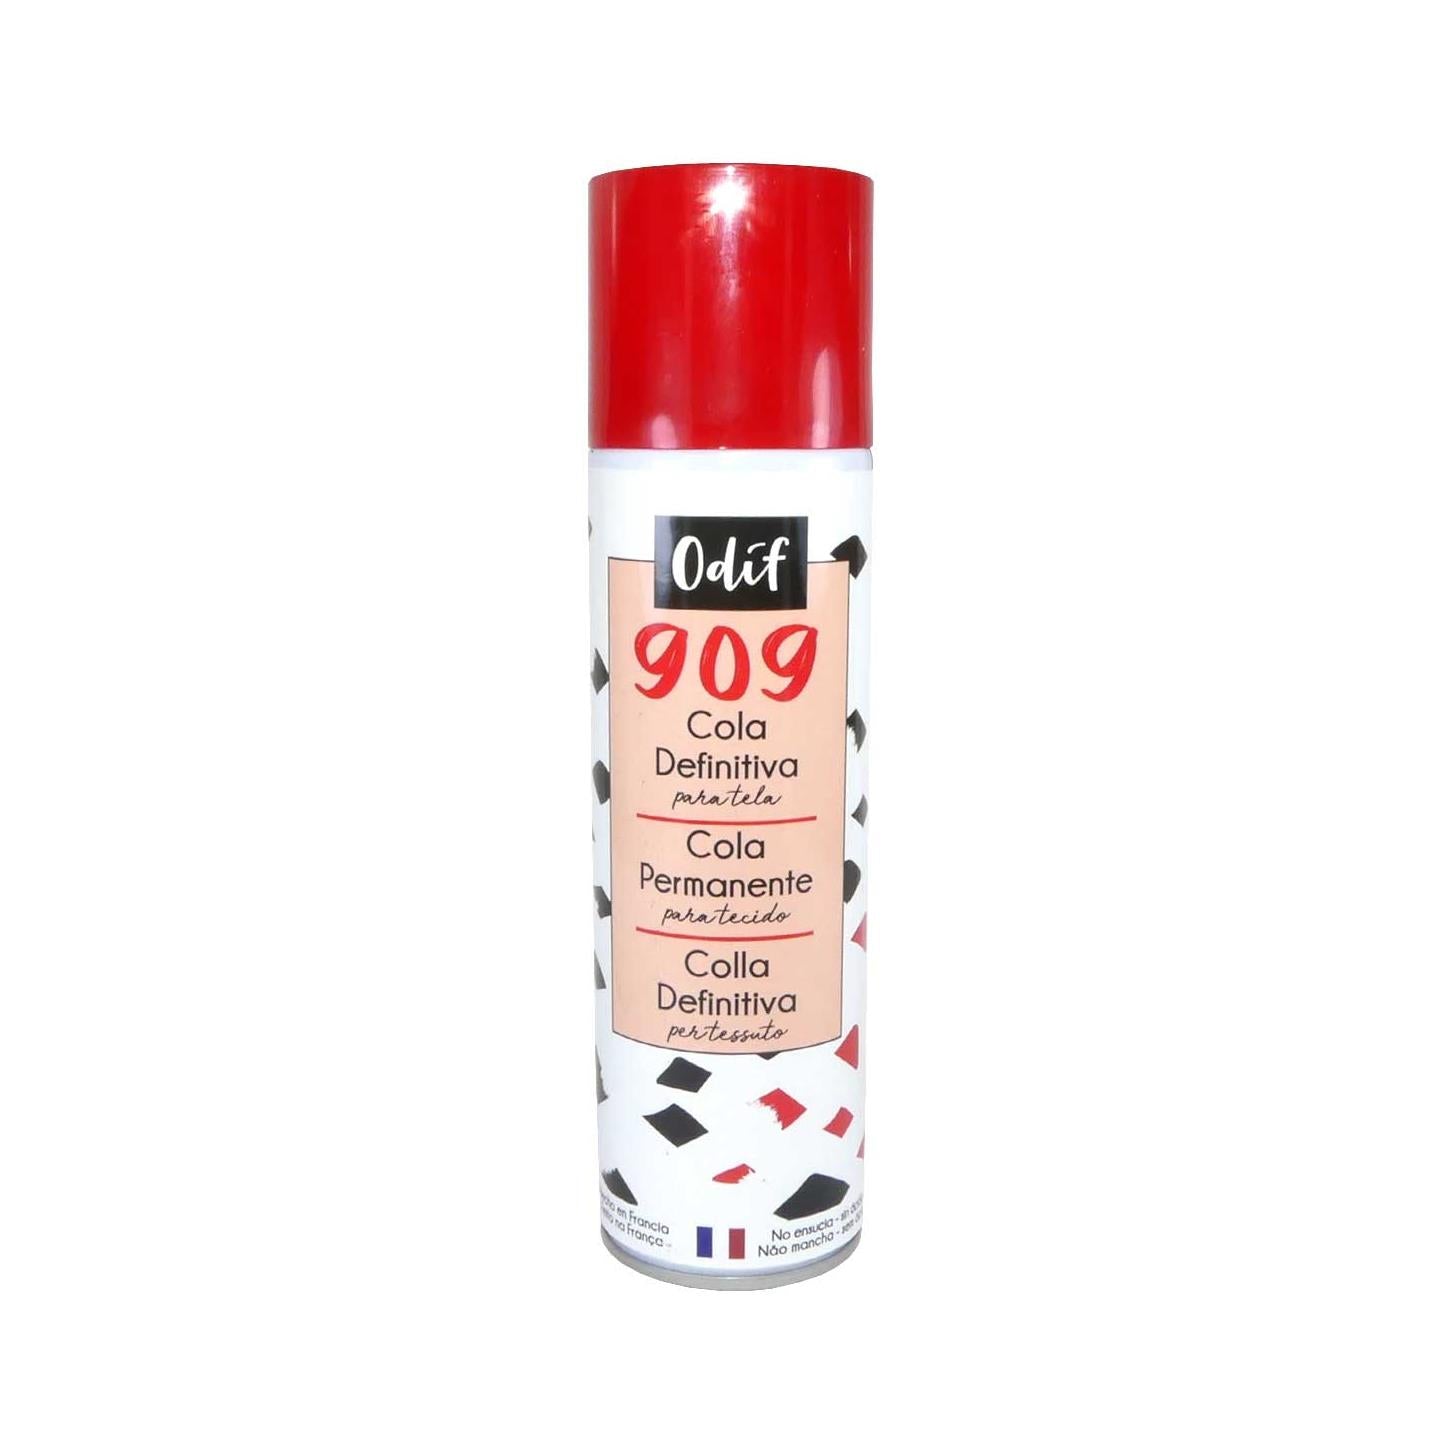 Comprar Adhesivo Temporal Spray para Tejidos y Papeles 505